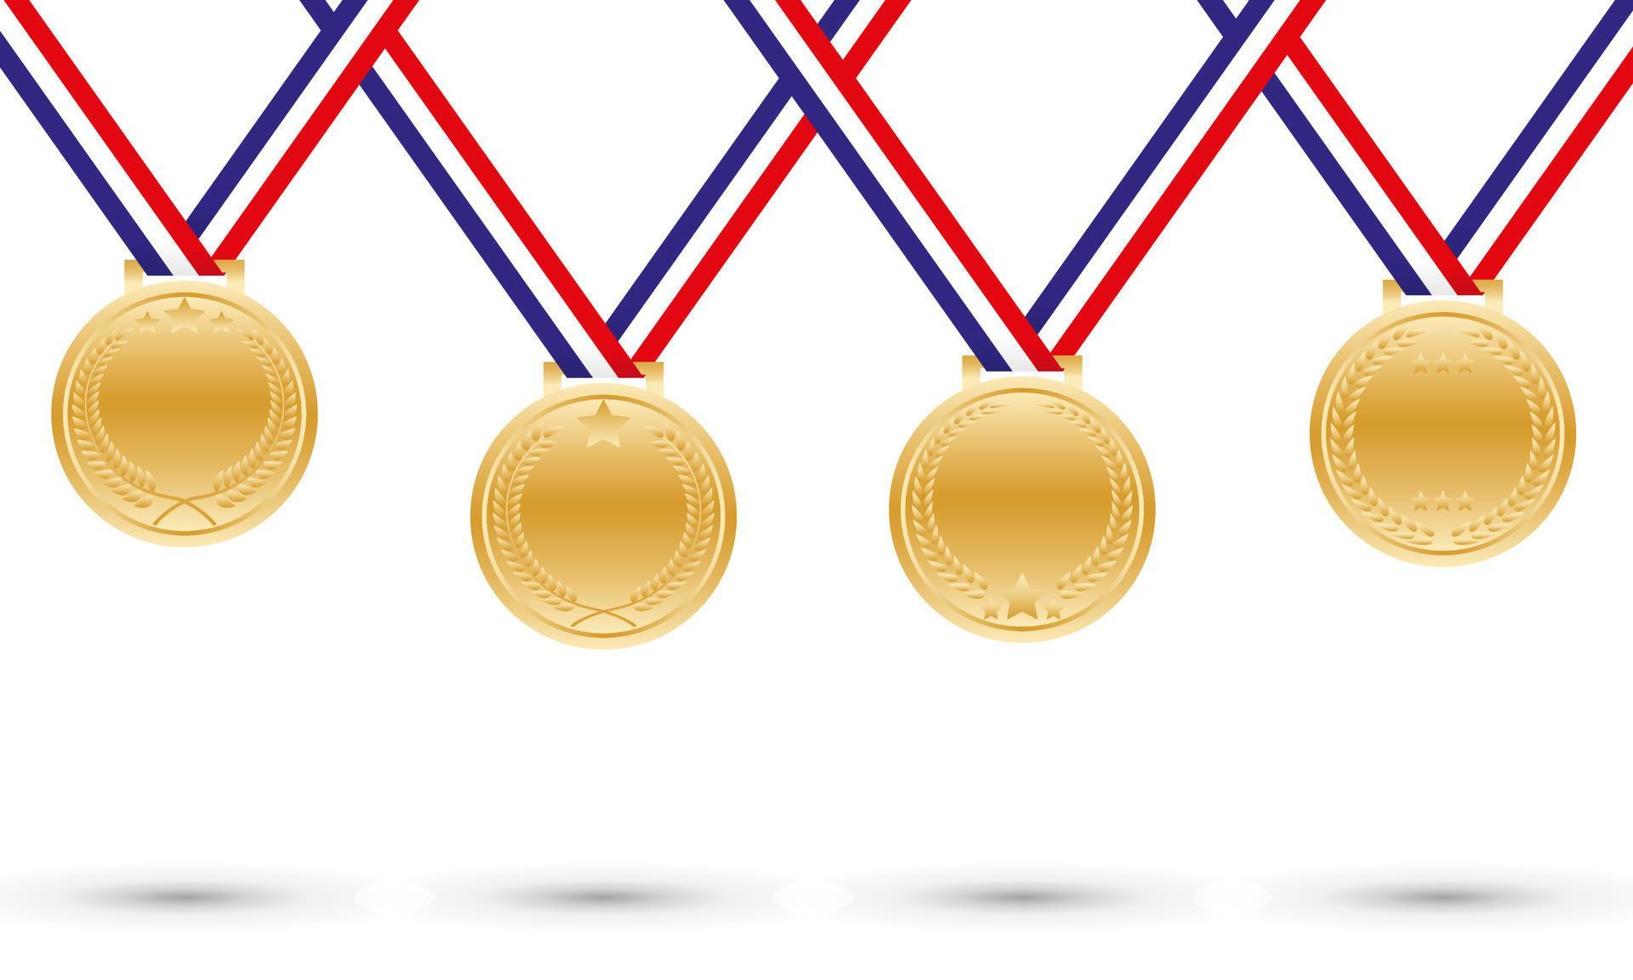 médaille d'or vierge avec divers ornements par dessin vectoriel